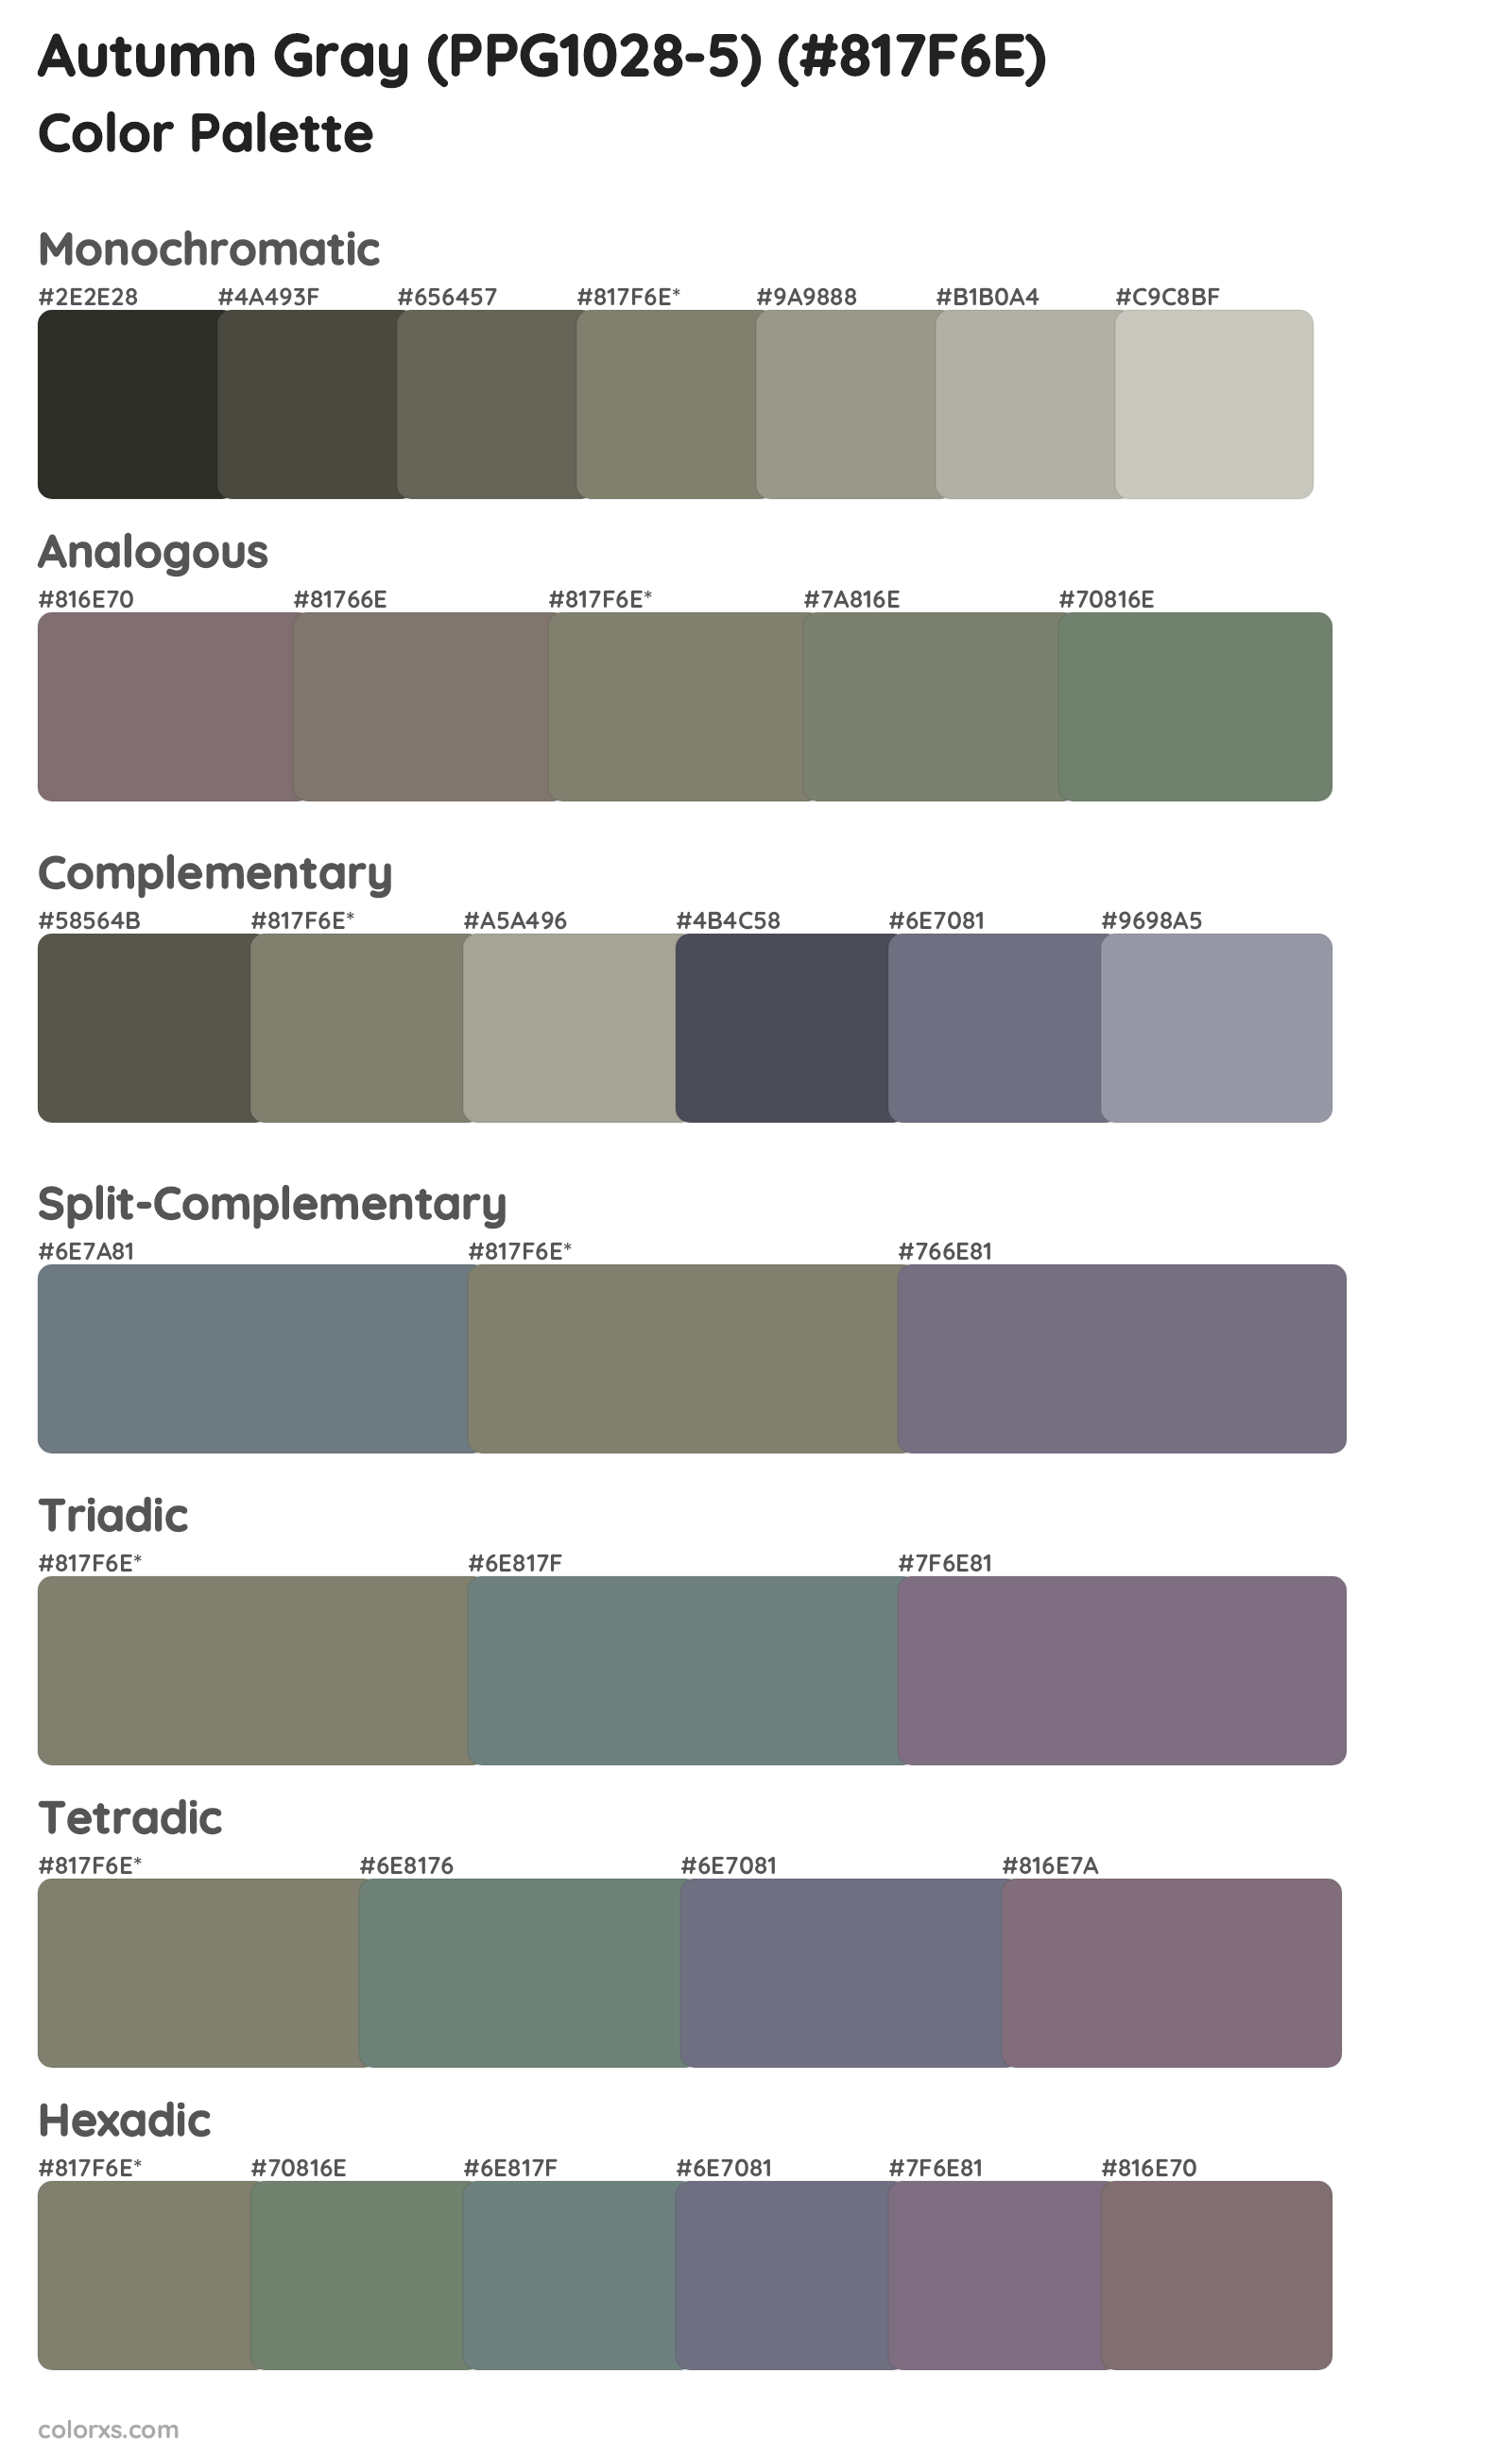 Autumn Gray (PPG1028-5) Color Scheme Palettes